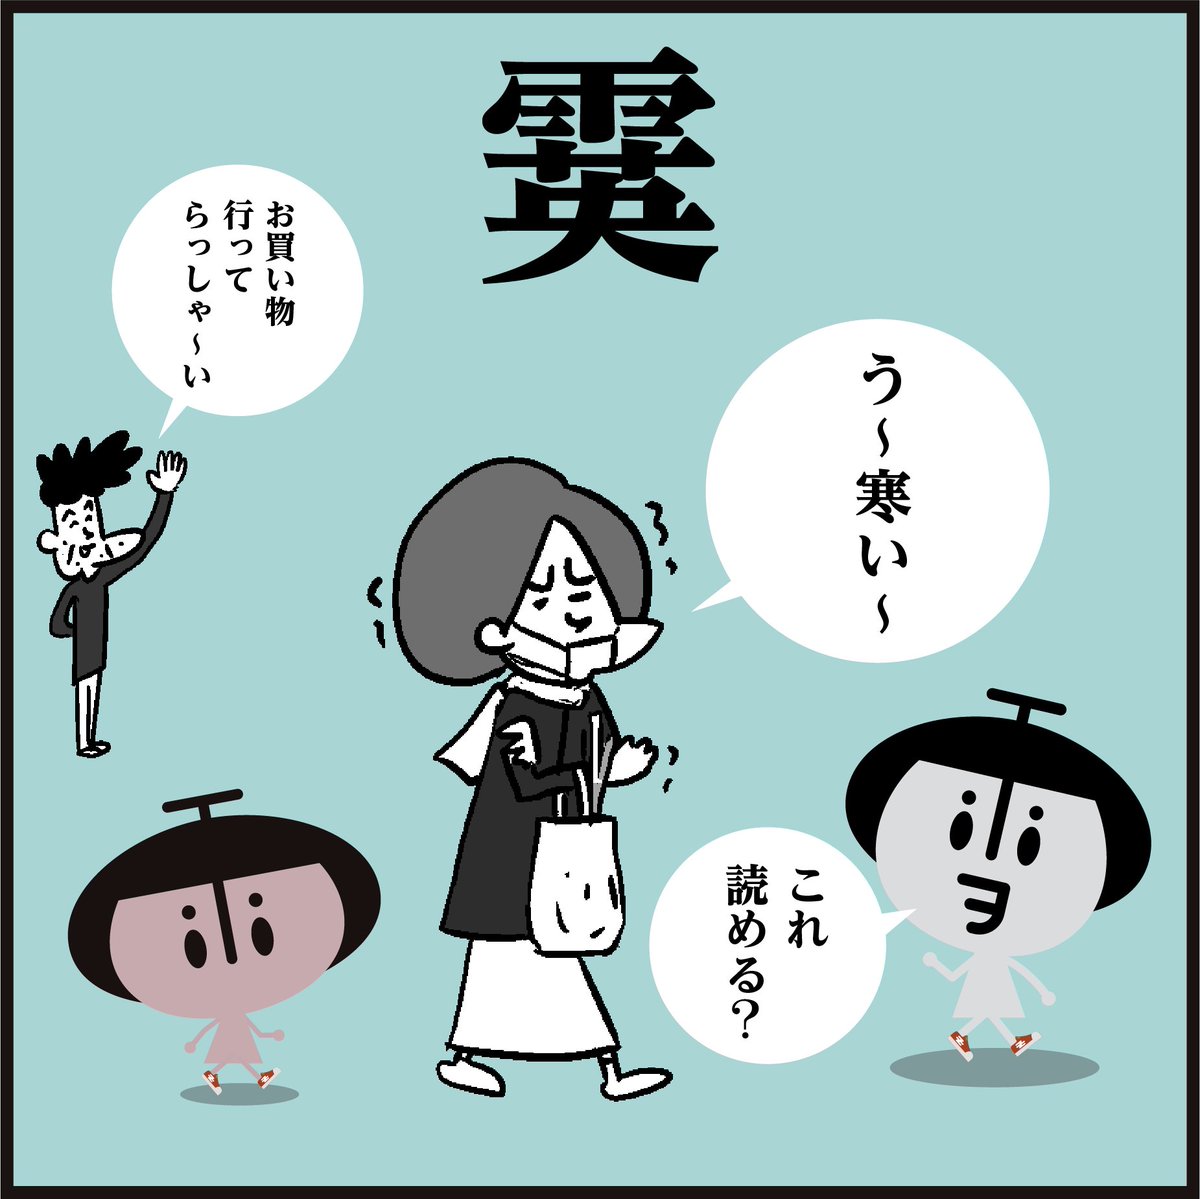 🤓漢字【霙】読めましたかー?
「雨」+「英」=「?」

#イラスト #4コマ漫画 #豆知識 
#雨 #雪 